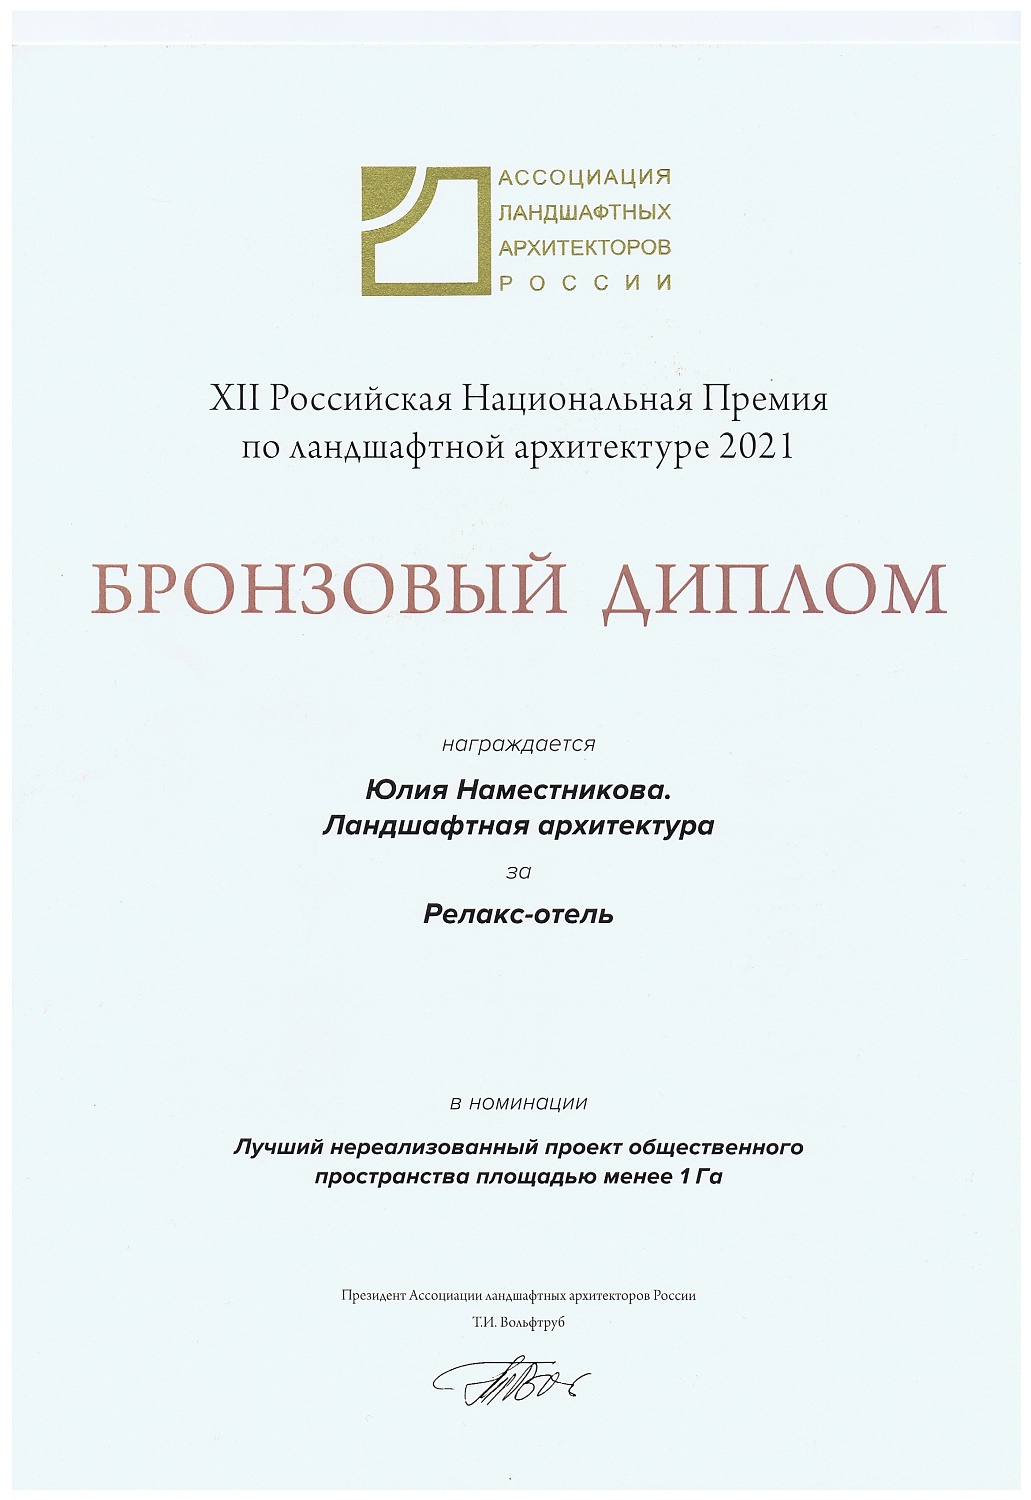 Xll Российская национальная премия по ландшафтной архитектуре 2021 - Релакс отель